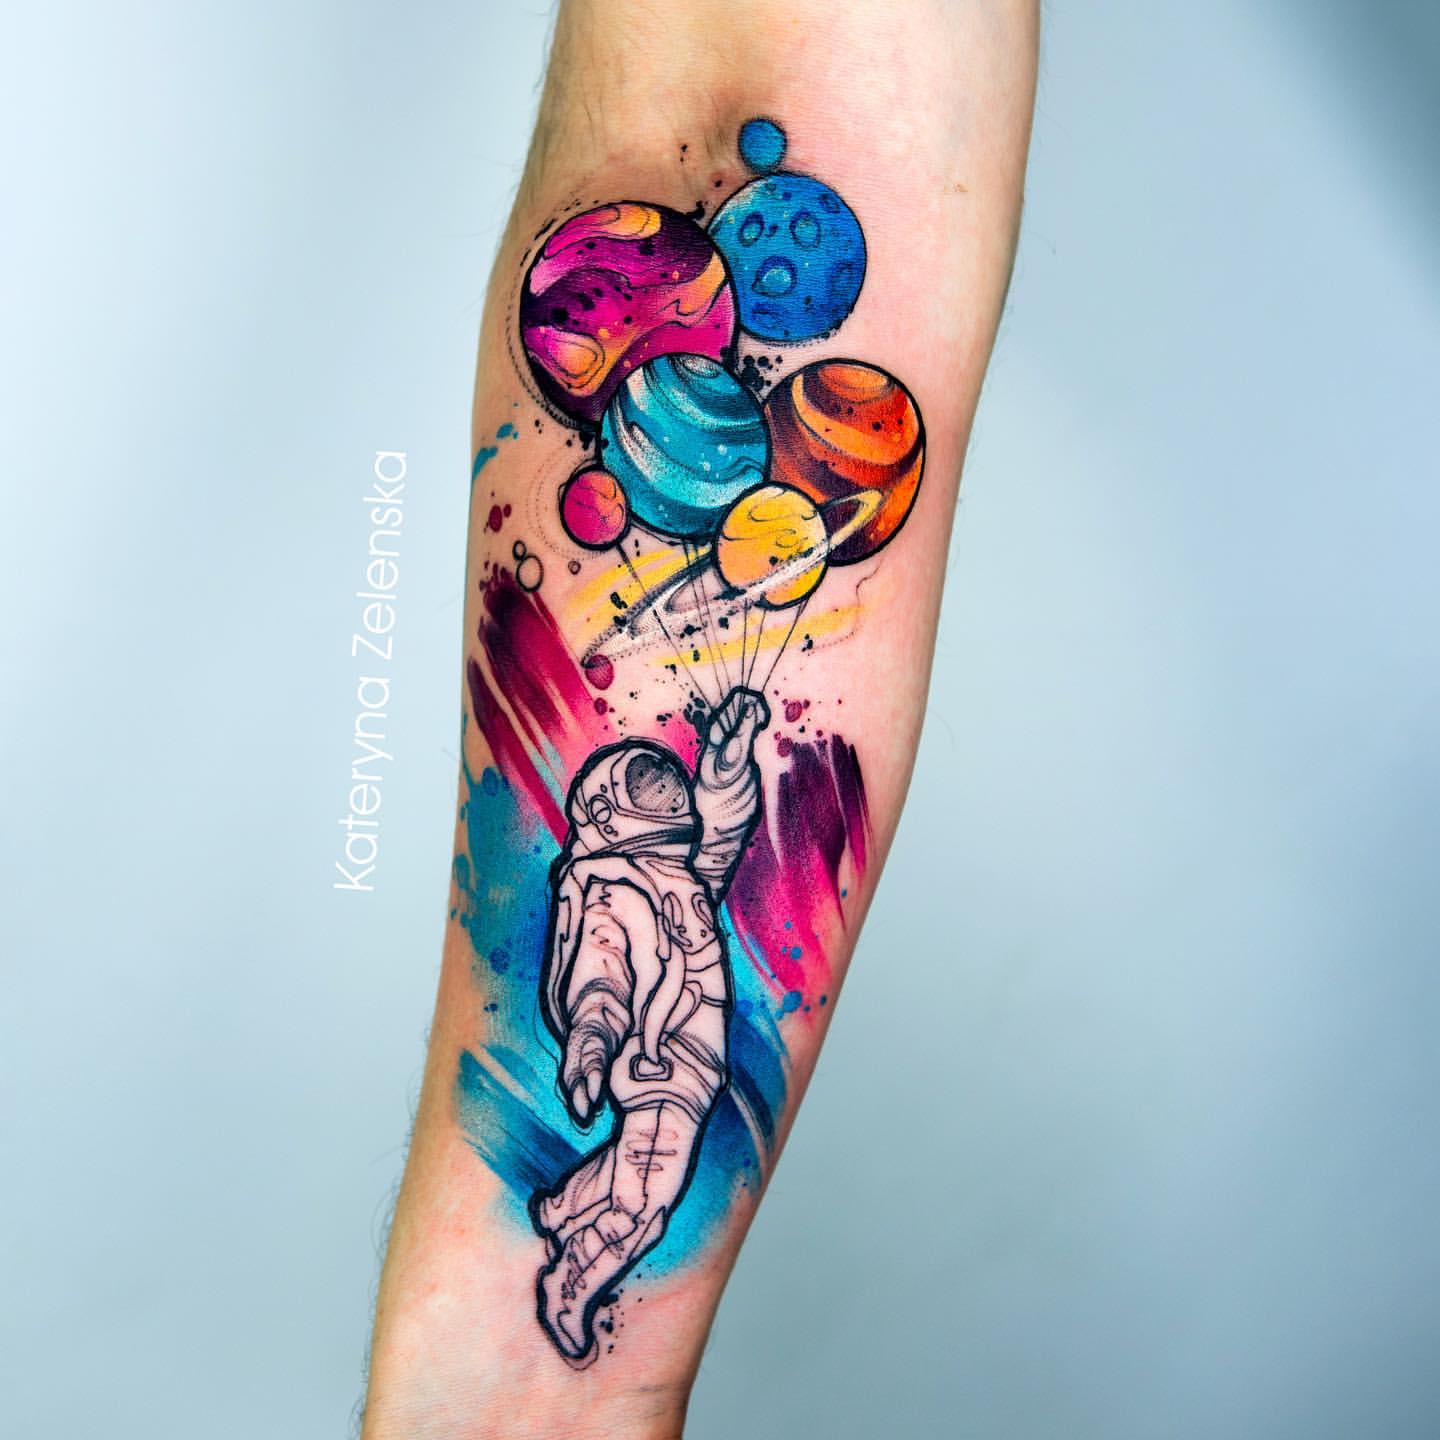 Astronaut Tattoo Ideas 20